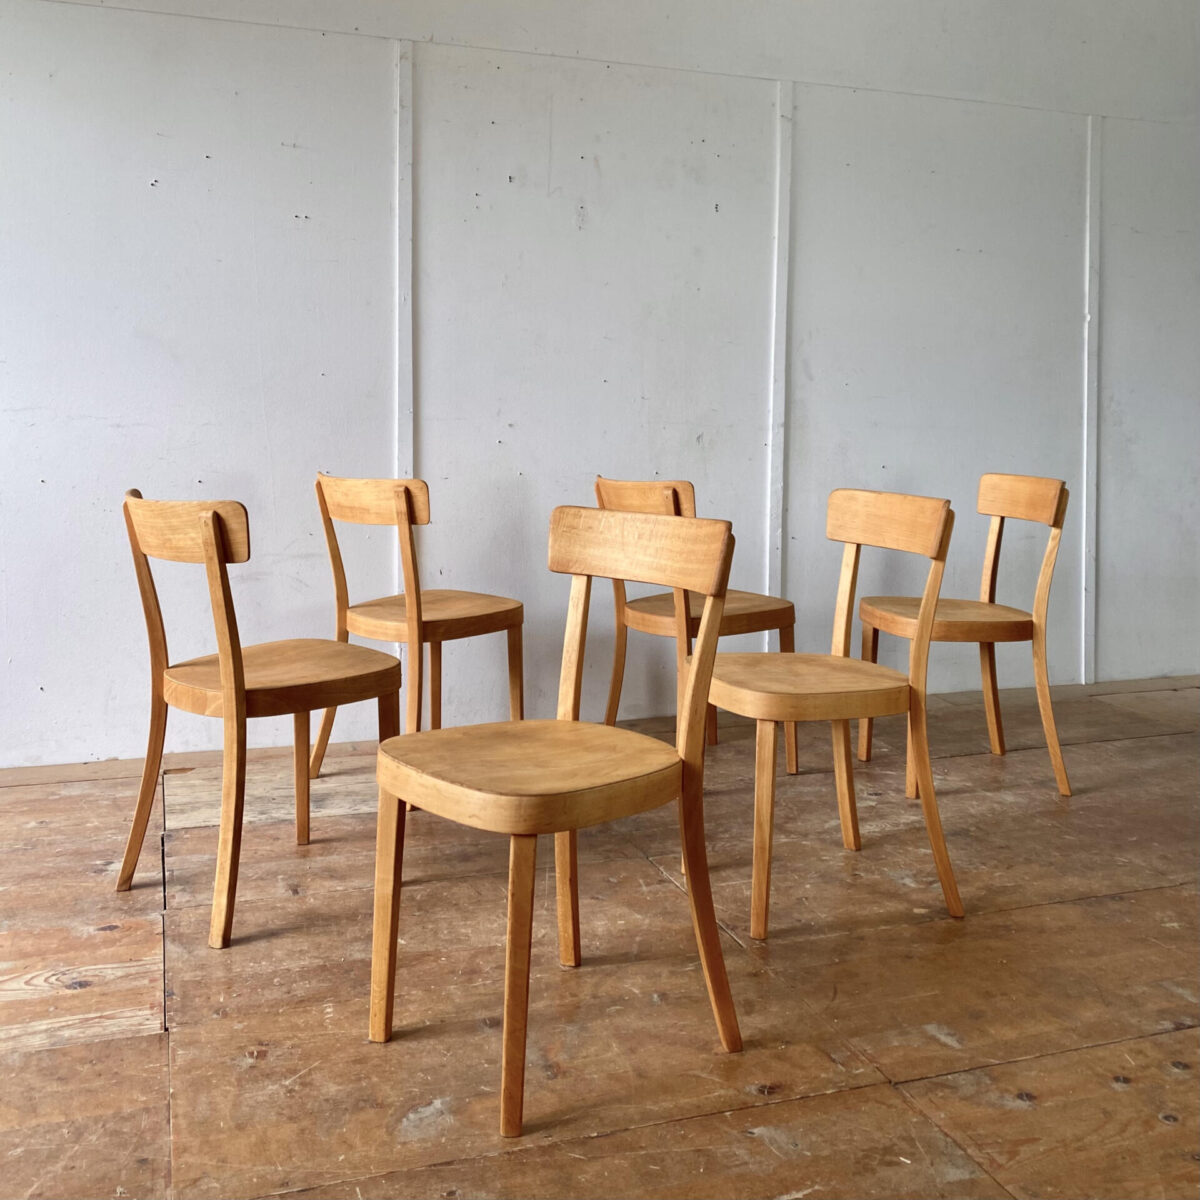 Deuxieme.shop horgenglarus Beizenstühle. 6er Set Horgen Glarus Classic von 1964. Die Stühle sind restauriert, und technisch in in stabilem Zustand. Die Holzoberflächen sind geschliffen und geölt, warme matte Ausstrahlung mit etwas Alterspatina. Der Preis gilt fürs 6er Set, momentan können aus 7stk ausgewählt werden. 